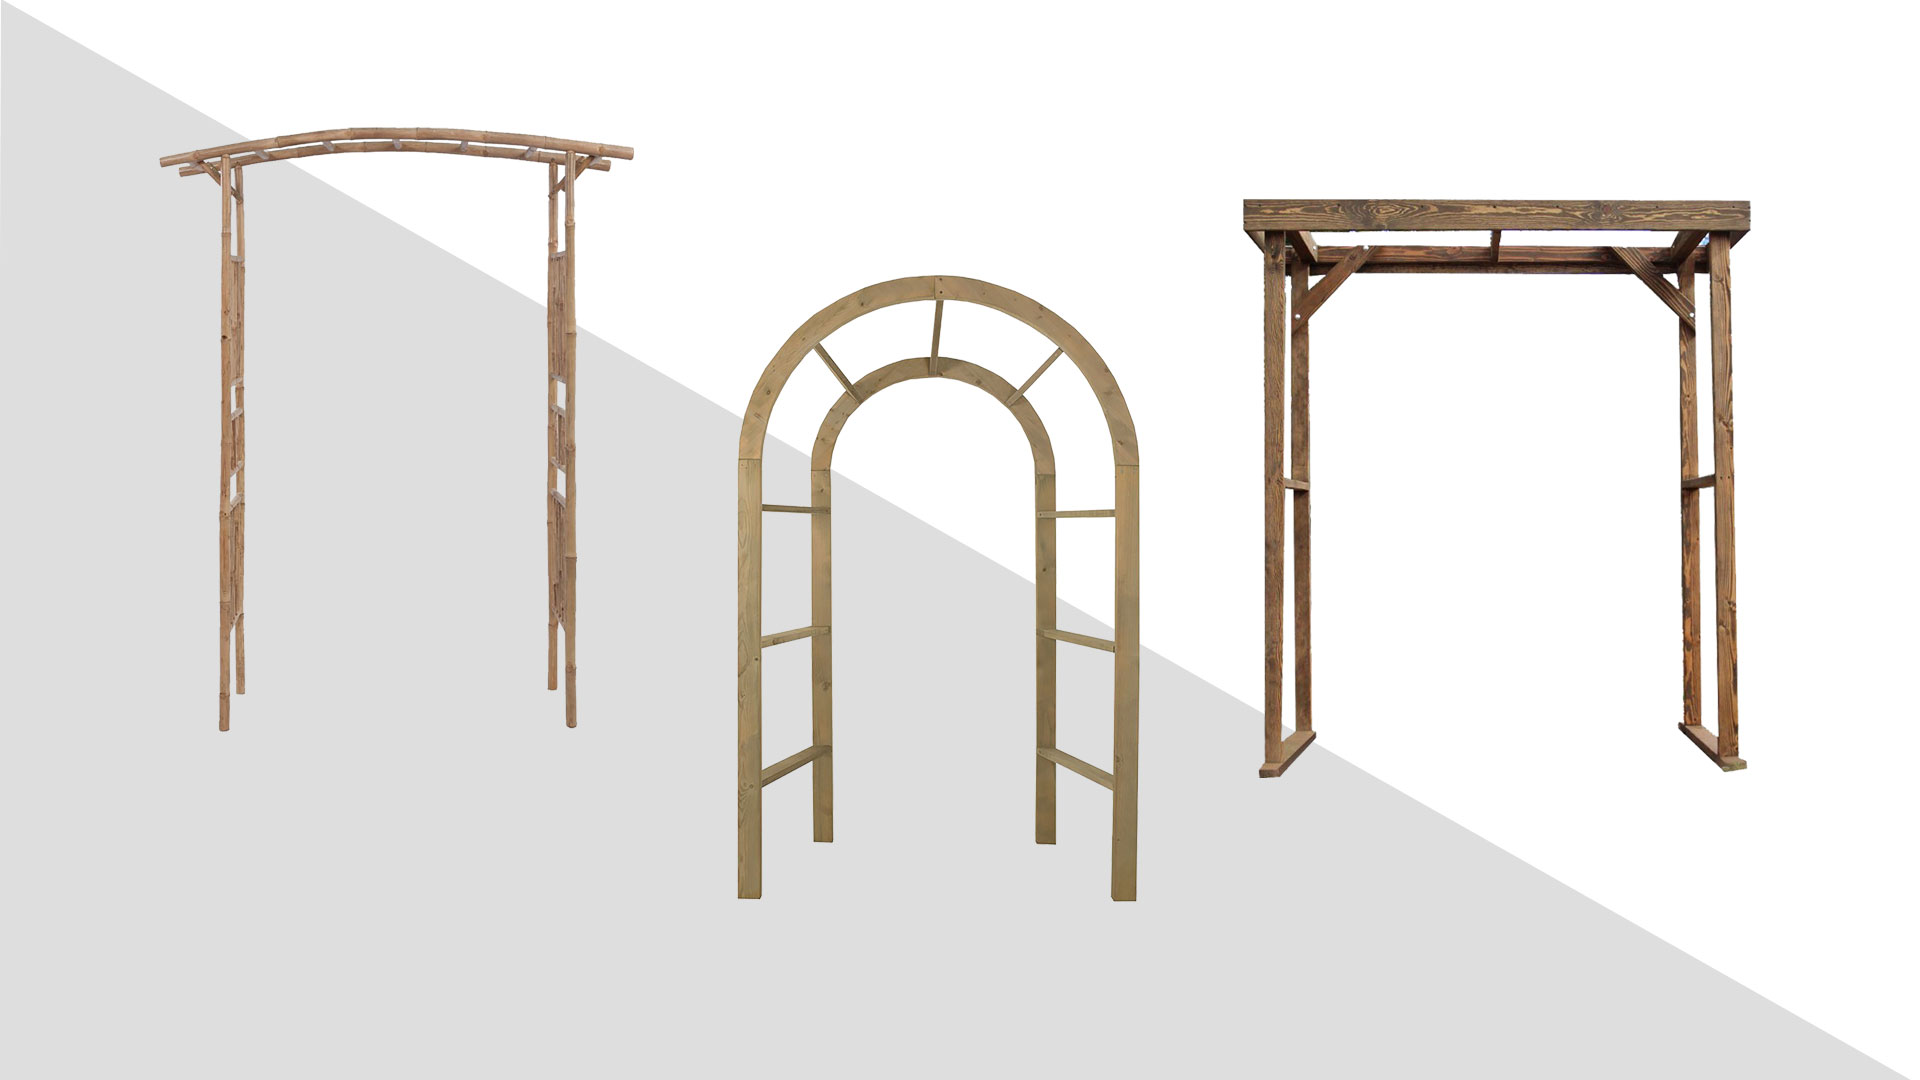 Скачать три модели деревянных свадебных арок без декора для работы в фотошопе: квадратная форма